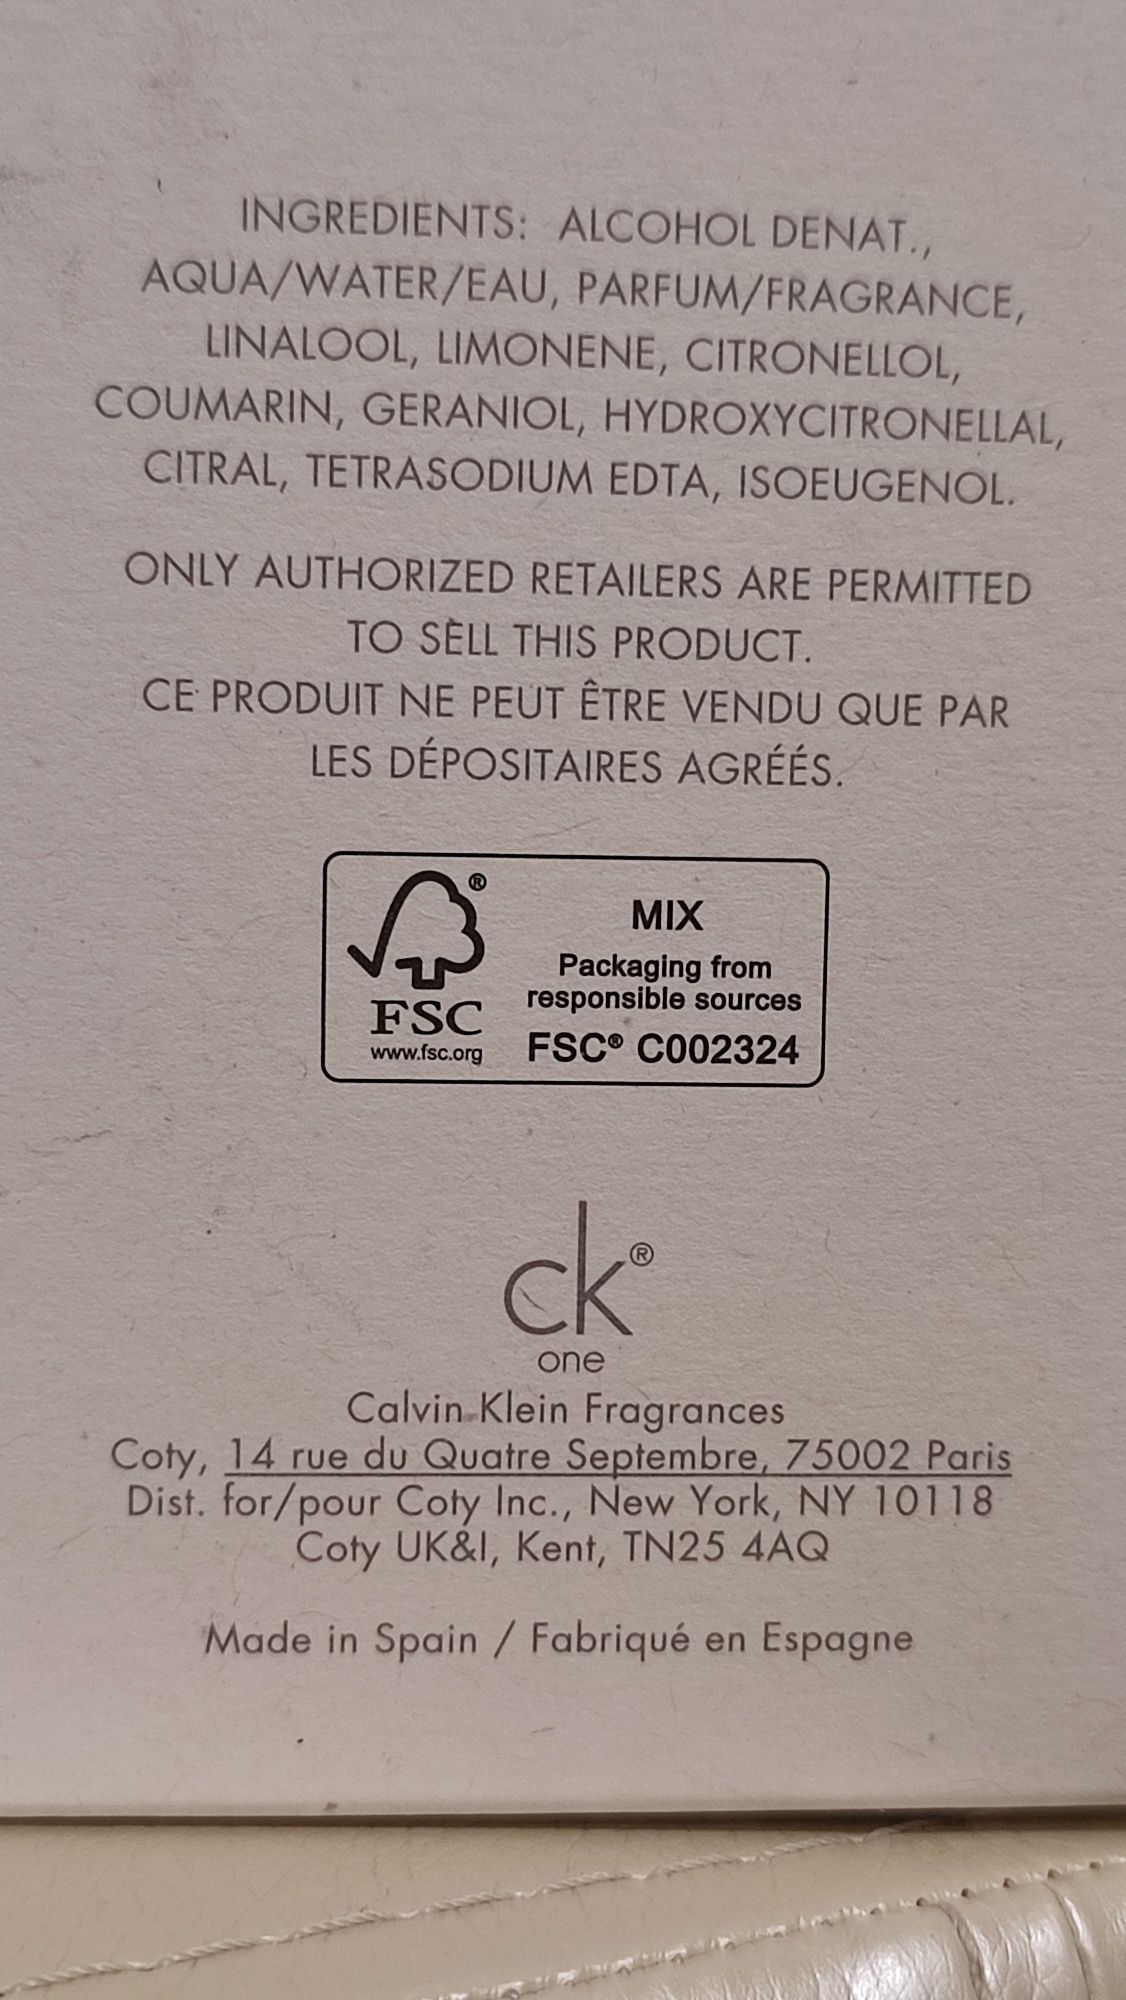 Продам Туалетную Воду Calvin Klein CK One